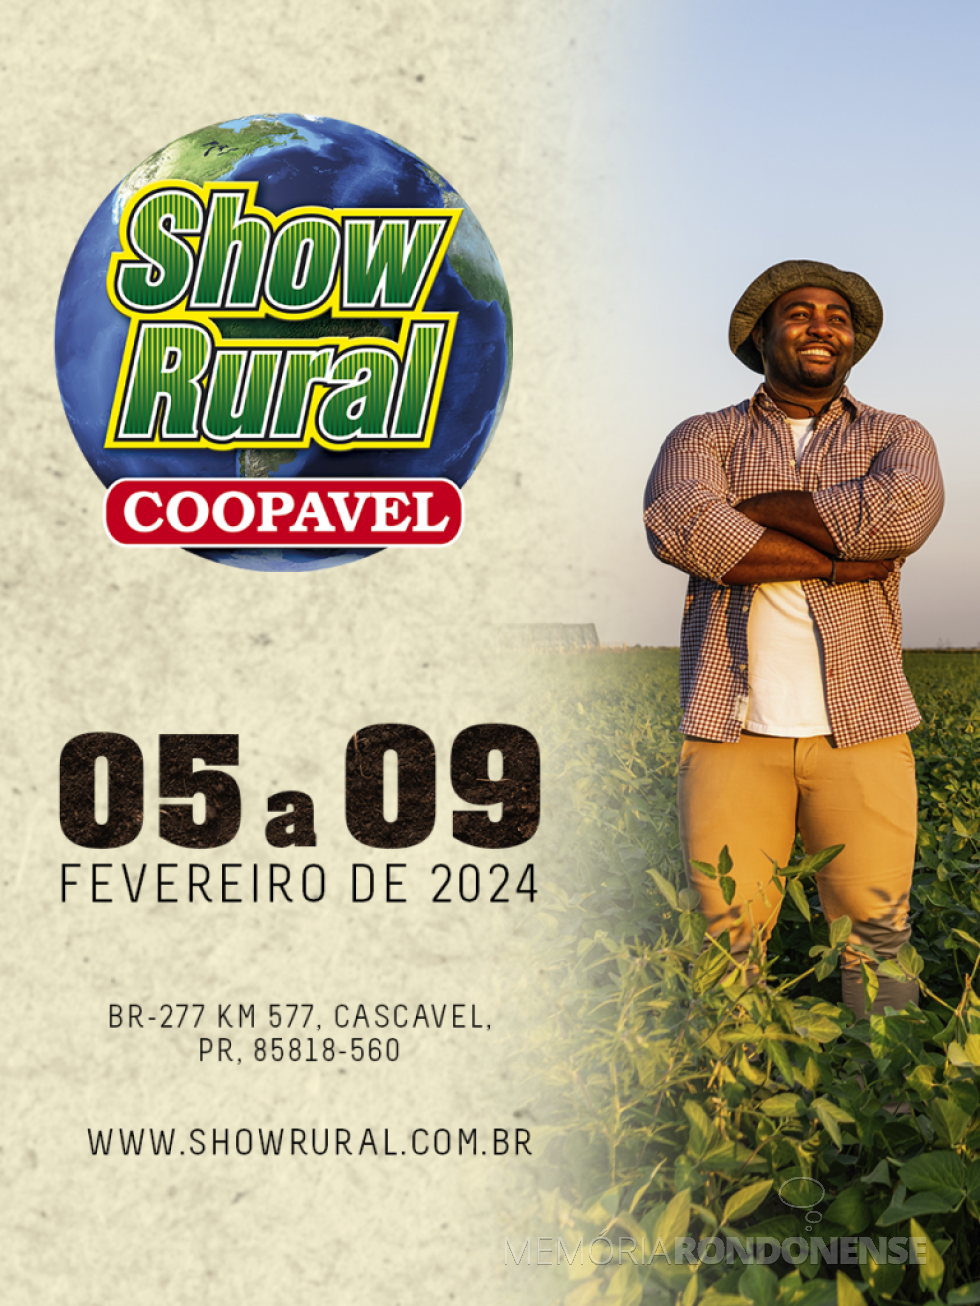 || Cartaz convite para a feira Show Rural 2024, na cidade de Cascavel.
Imagem: Acervo Coopavel - FOTO 22 -